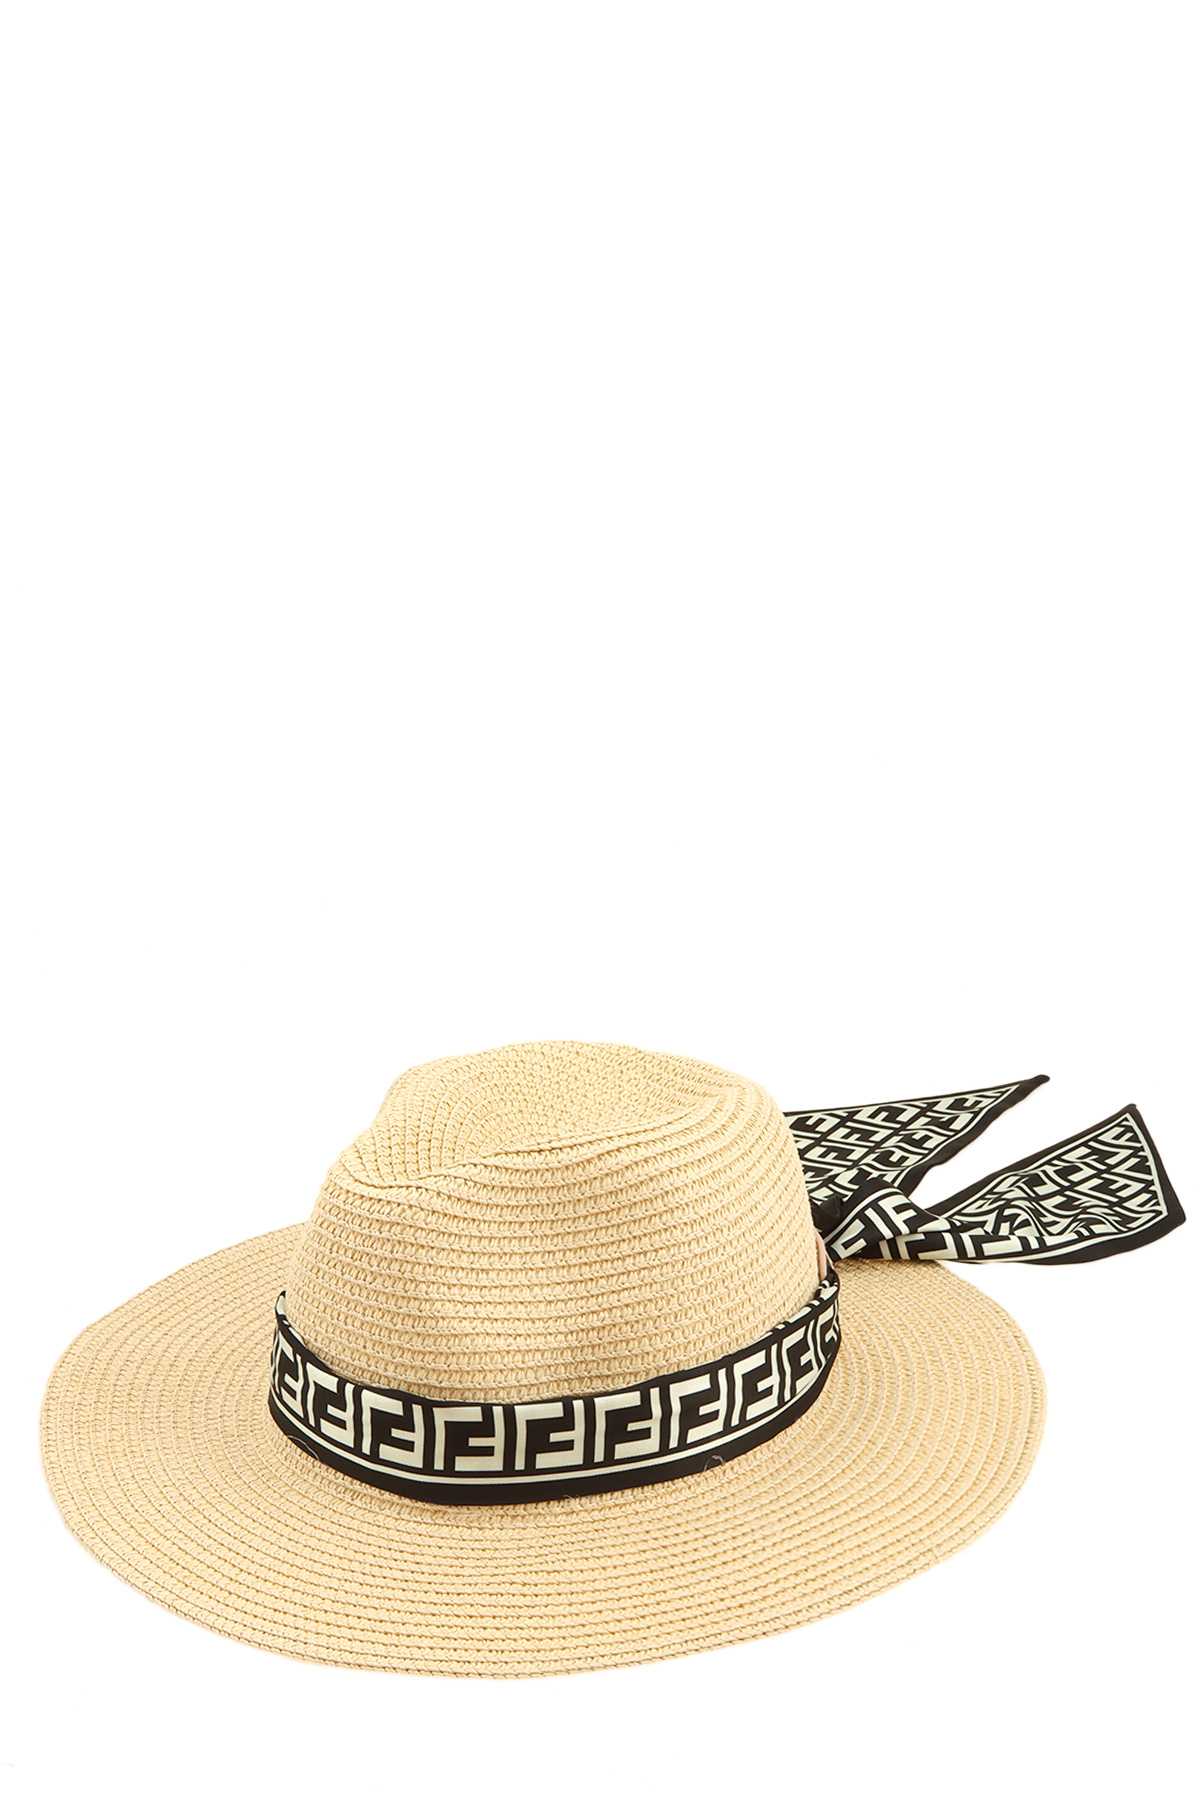 Greek Scarves Wrap Fedora Straw Hat